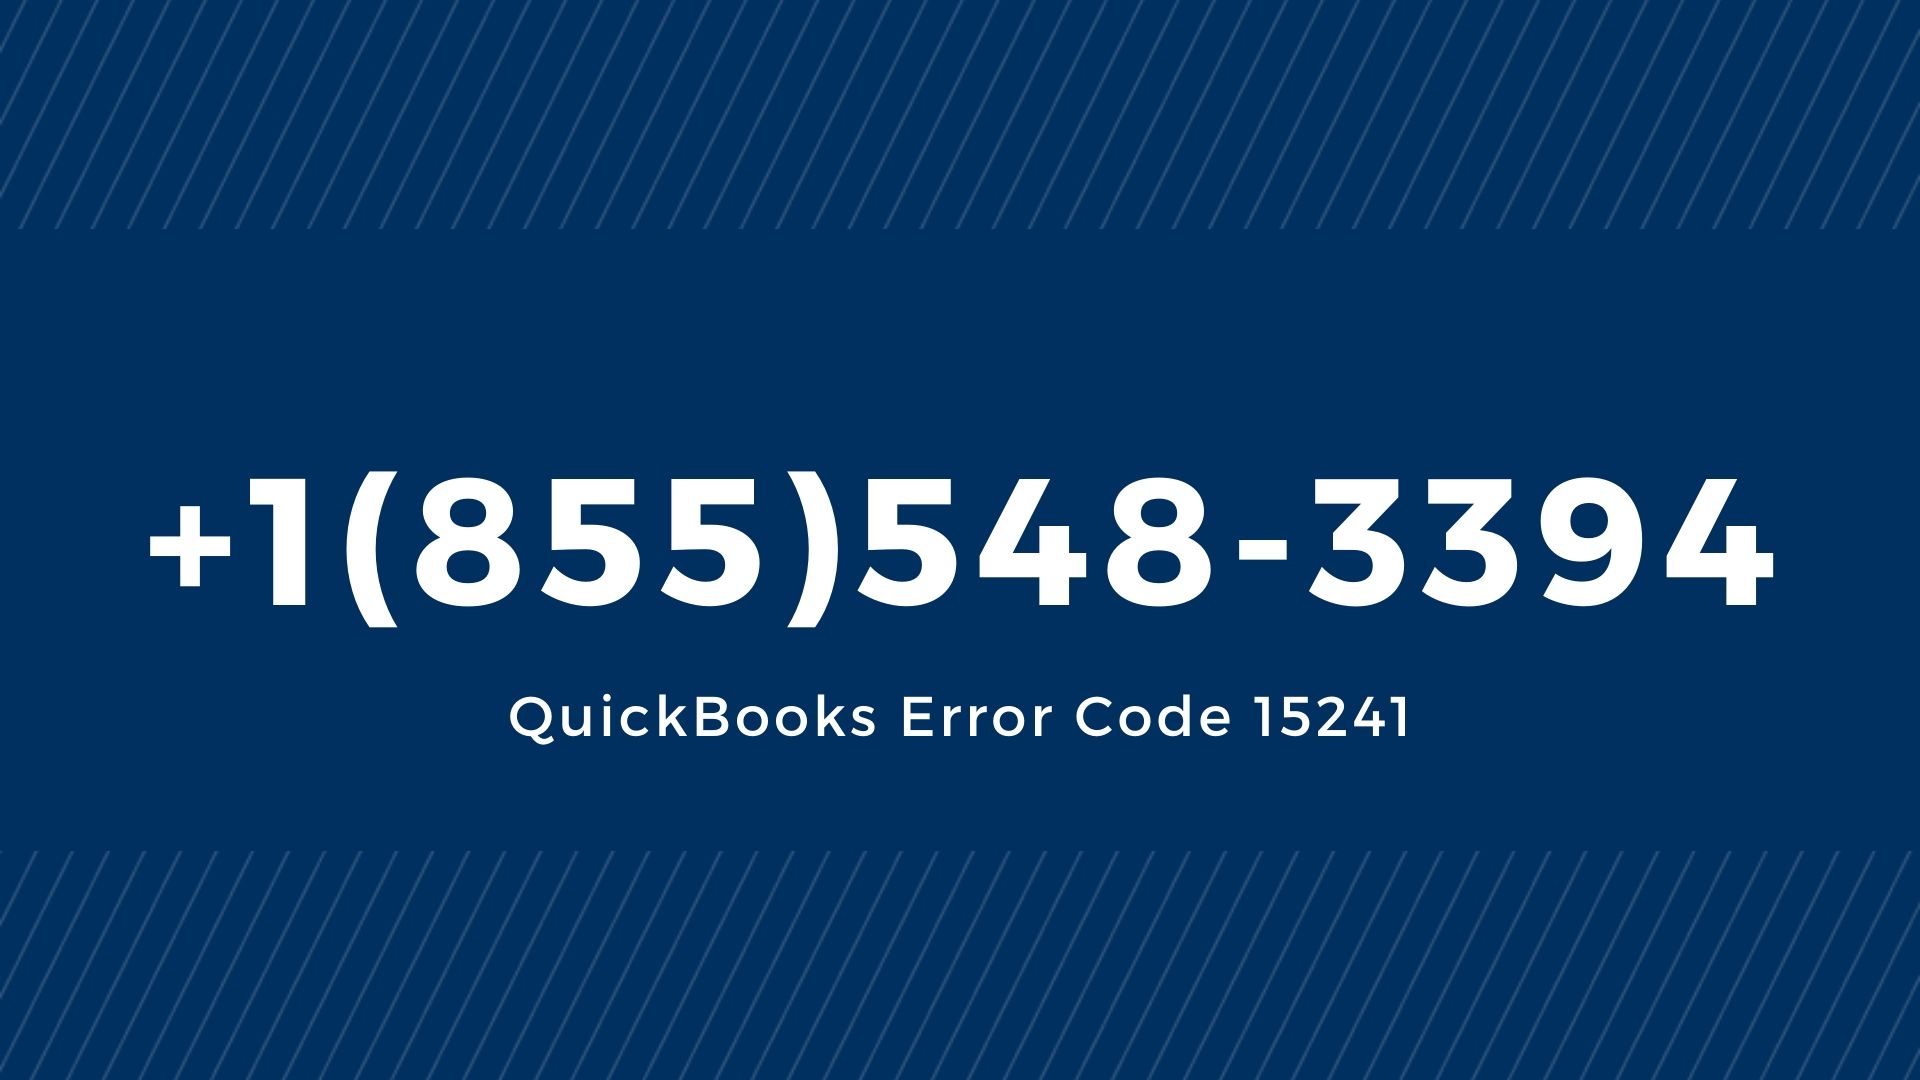 QuickBooks Error Code 15241